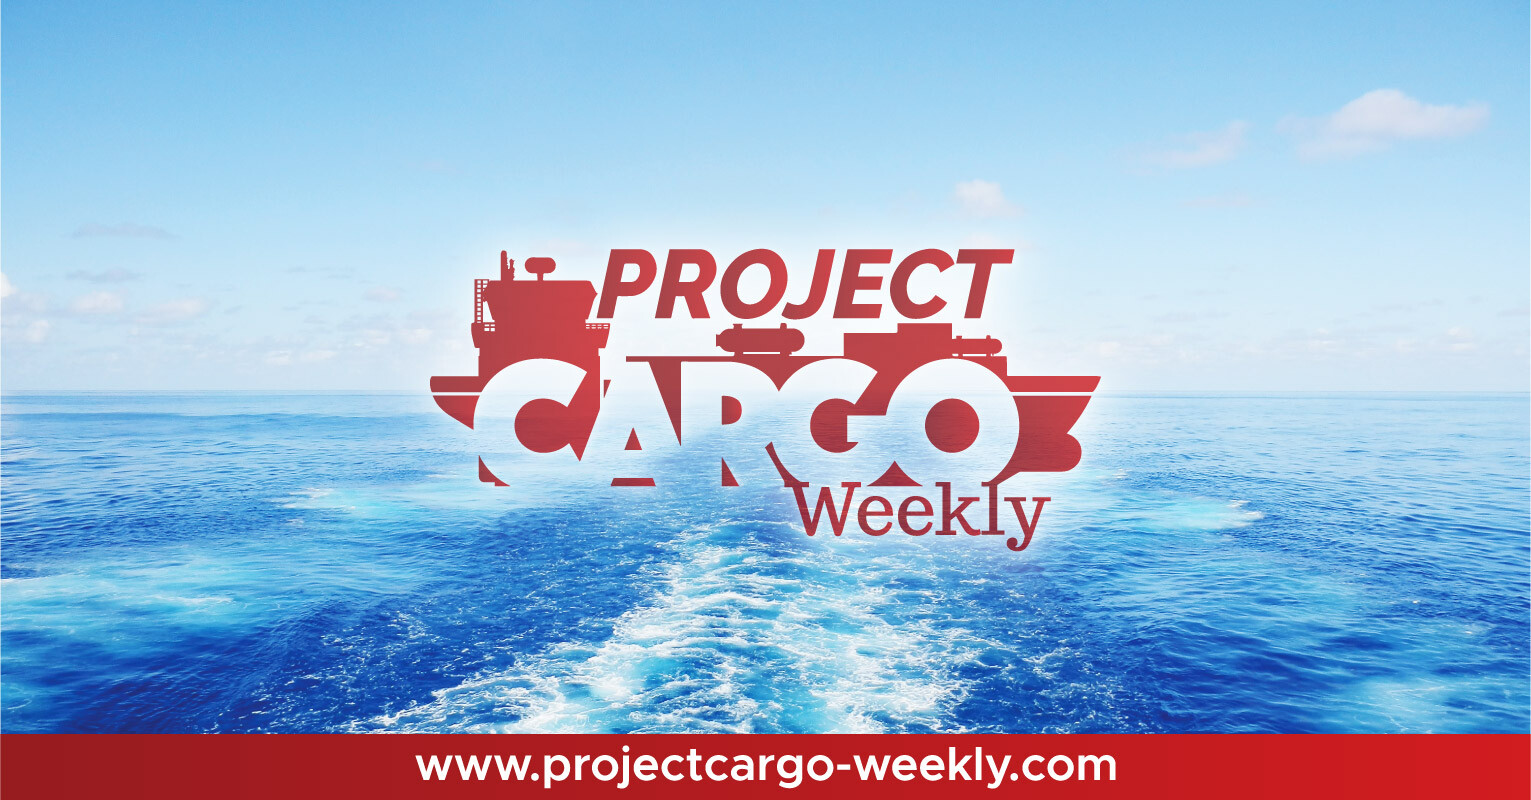 (c) Projectcargo-weekly.com